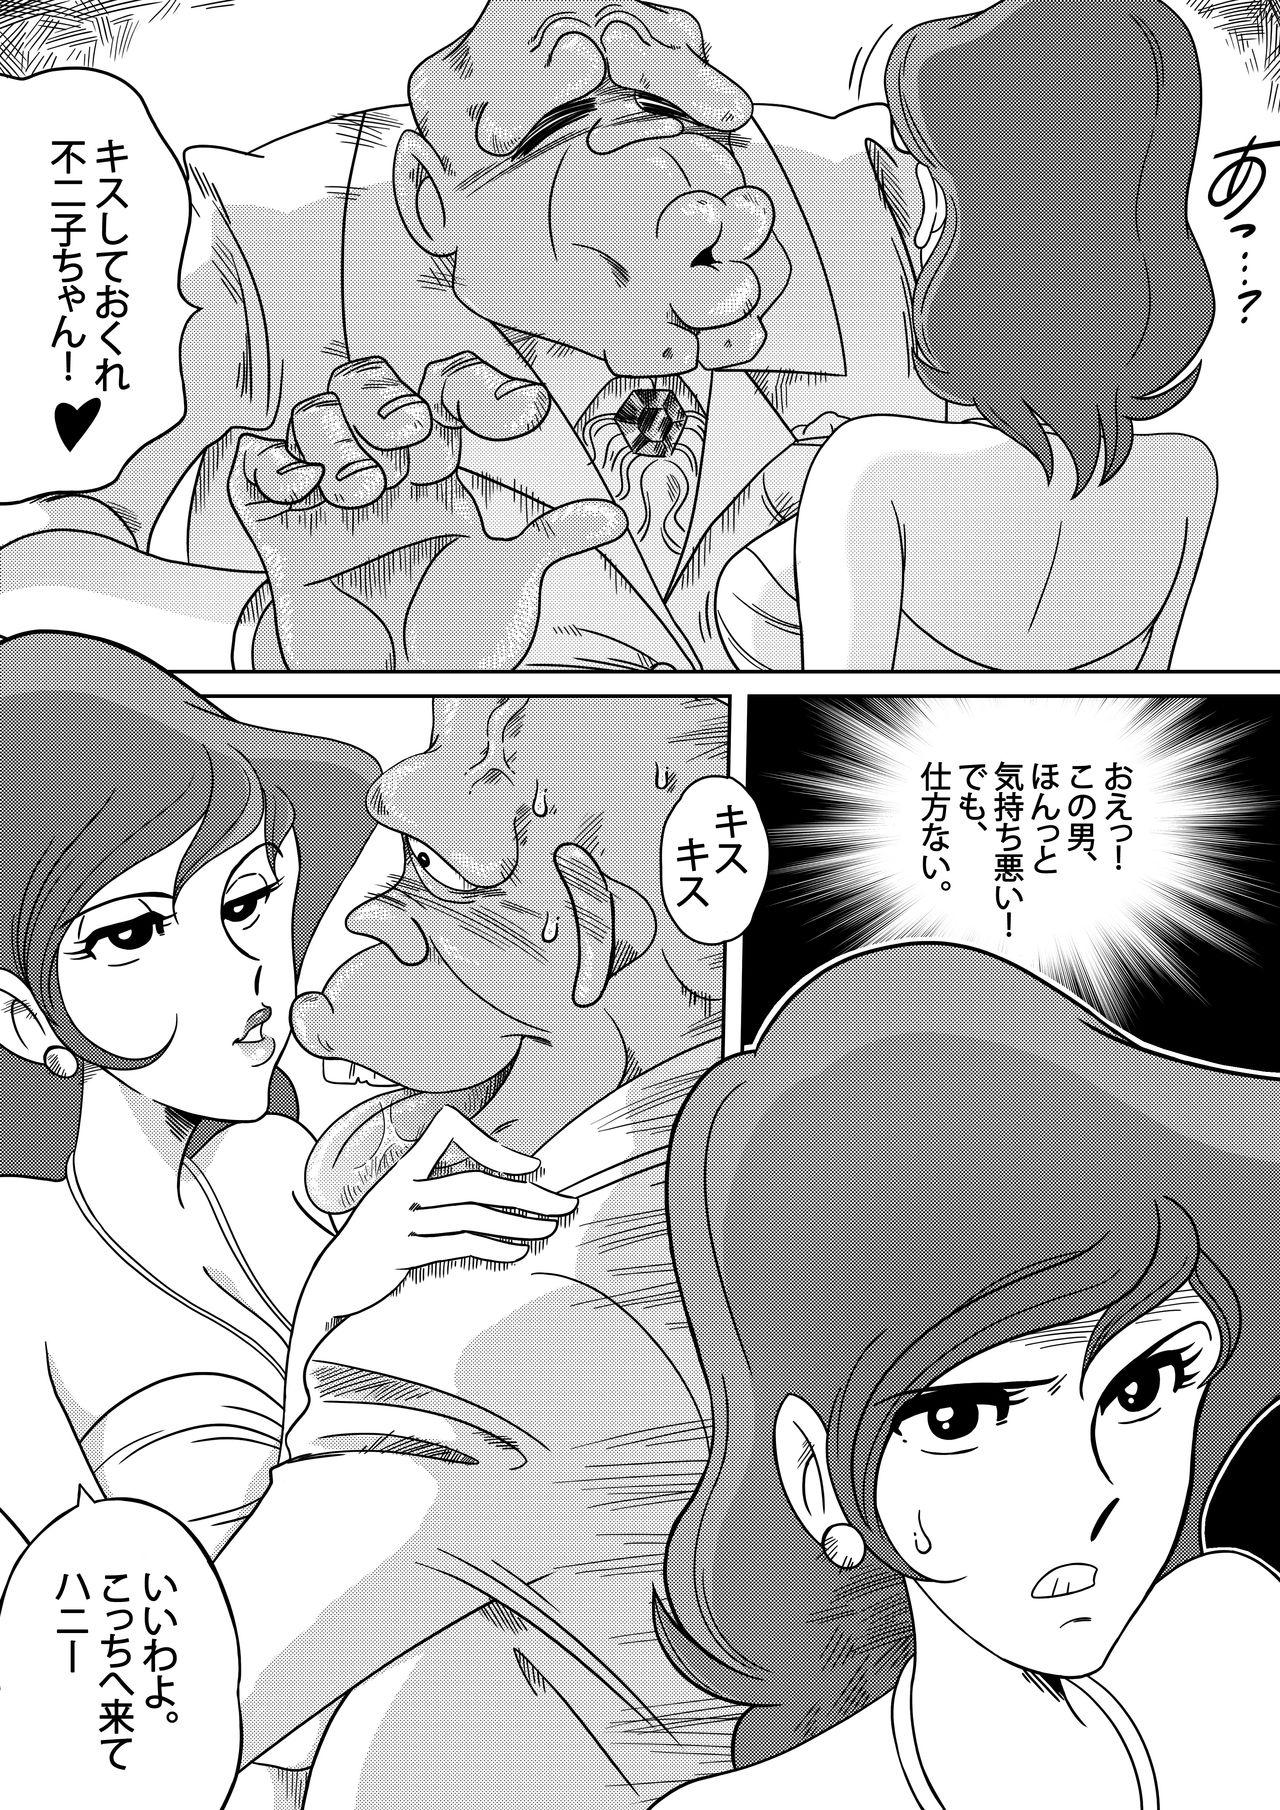 Teentube Fujiko the III - Lupin iii Sub - Page 5